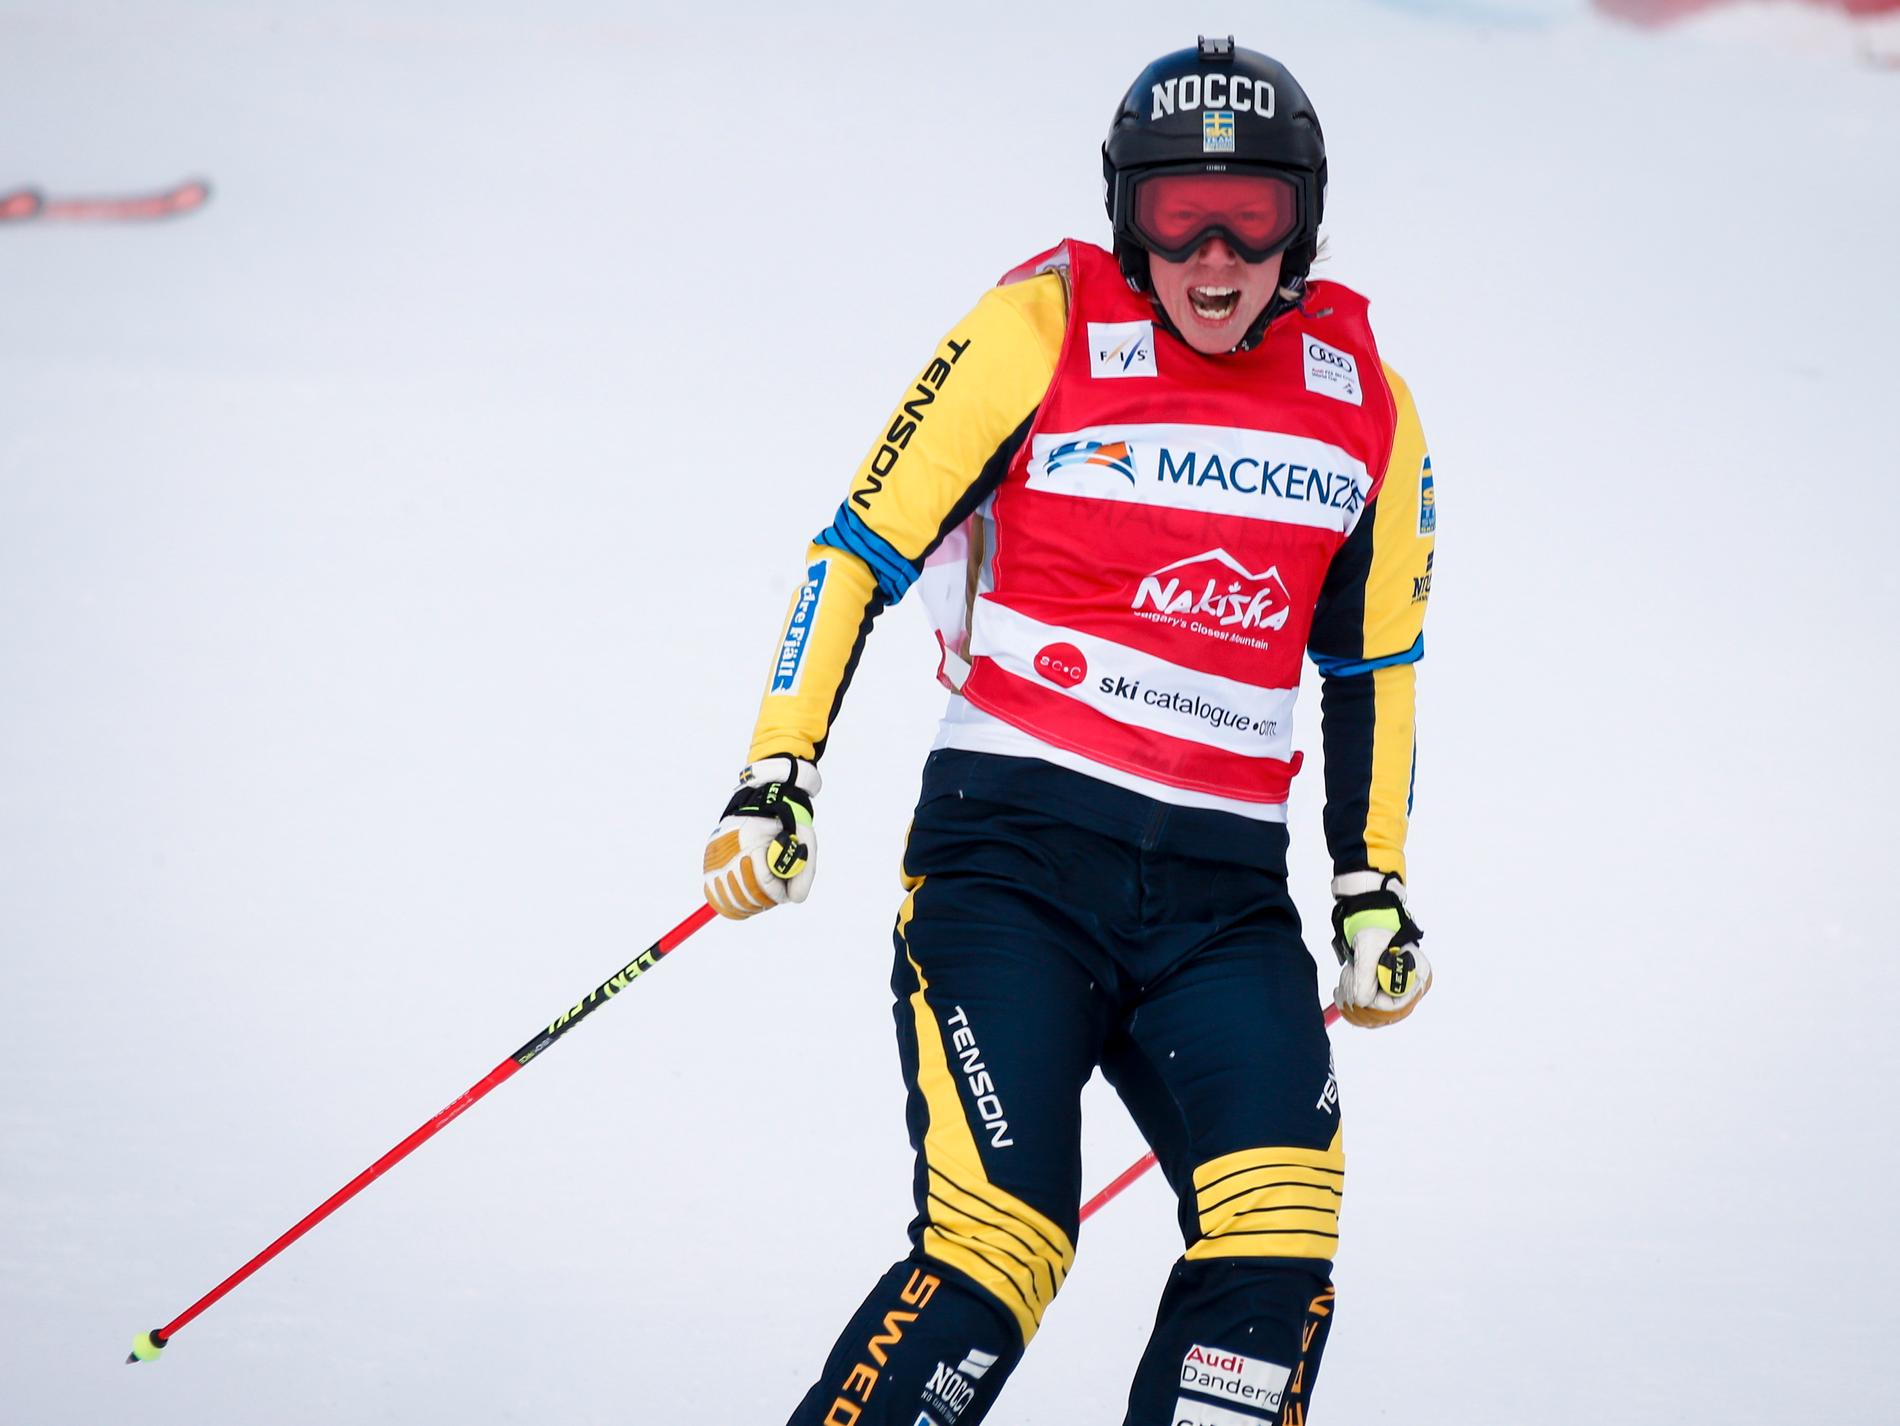 Vädret avgjorde när Sandra Näslund tog en ny pallplats i skicross. Arkivbild.